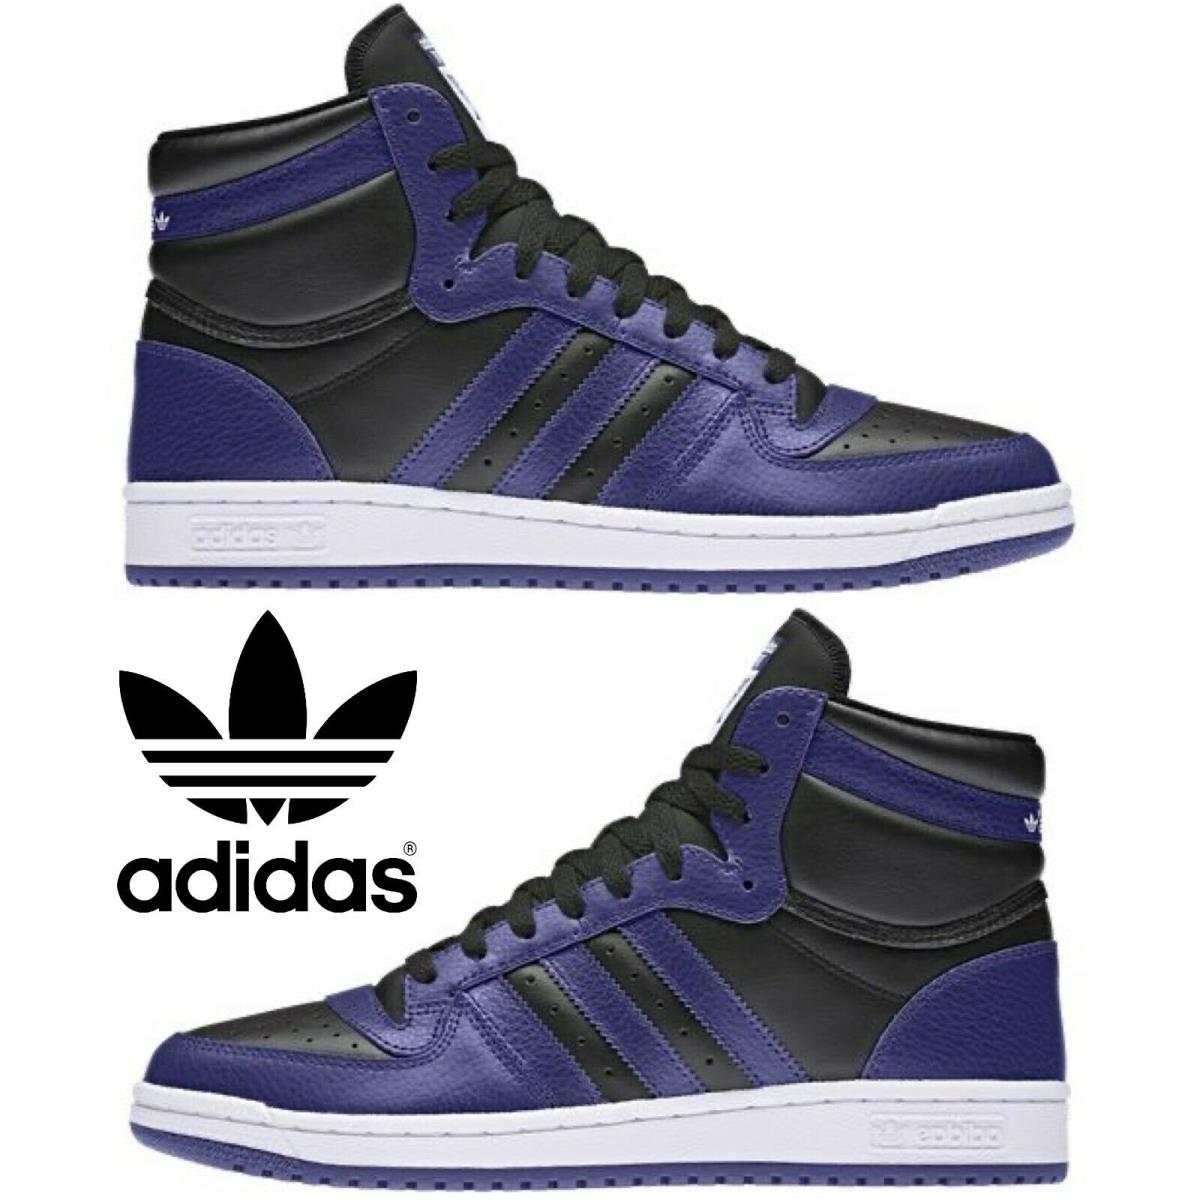 Adidas Originals Top Ten Hi Men`s Sneakers Comfort Casual Shoes Black Royal Blue